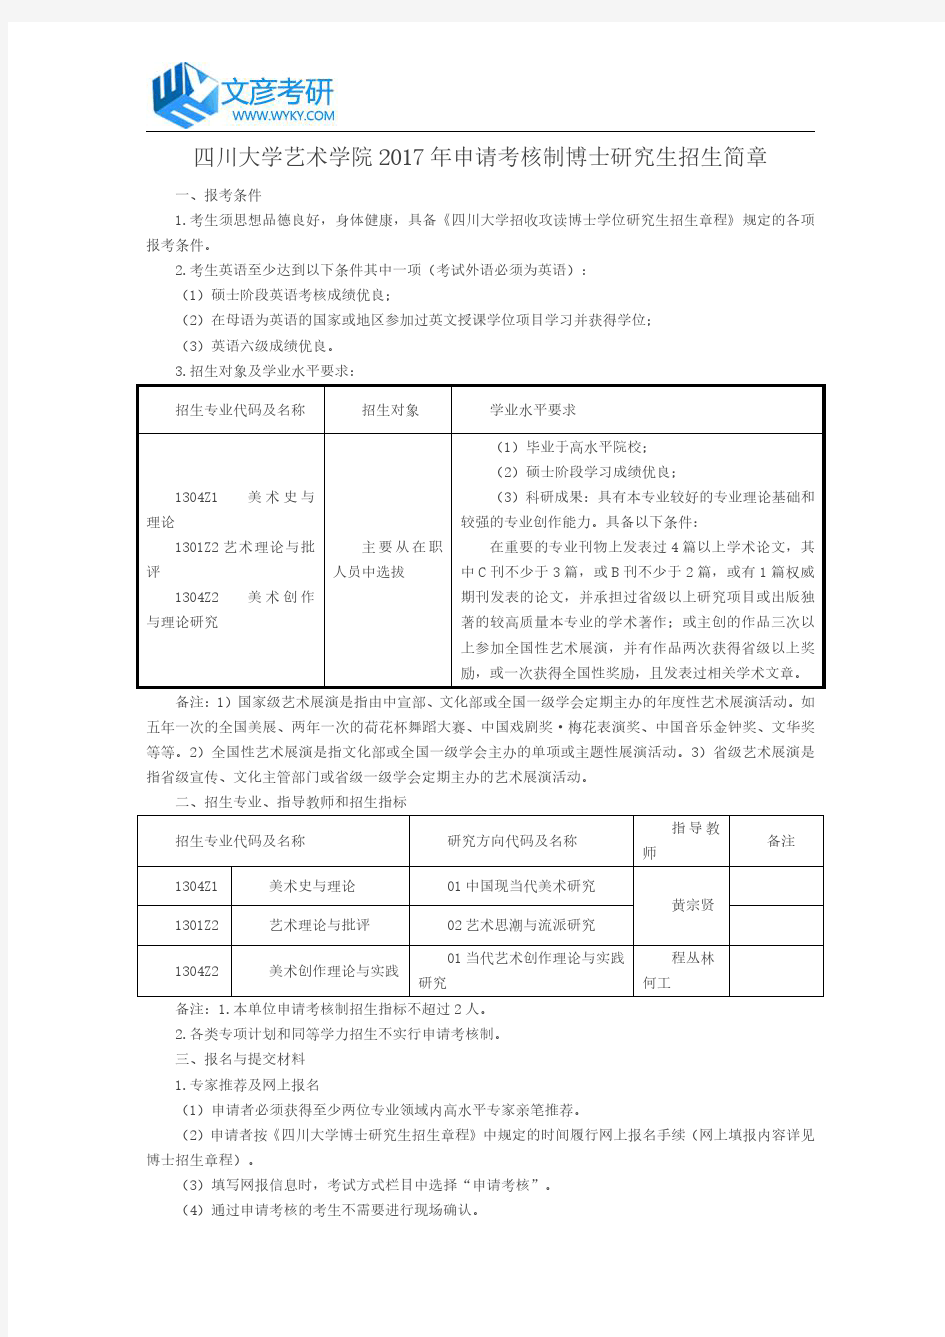 四川大学经济学院2017年推免生录取名单公示